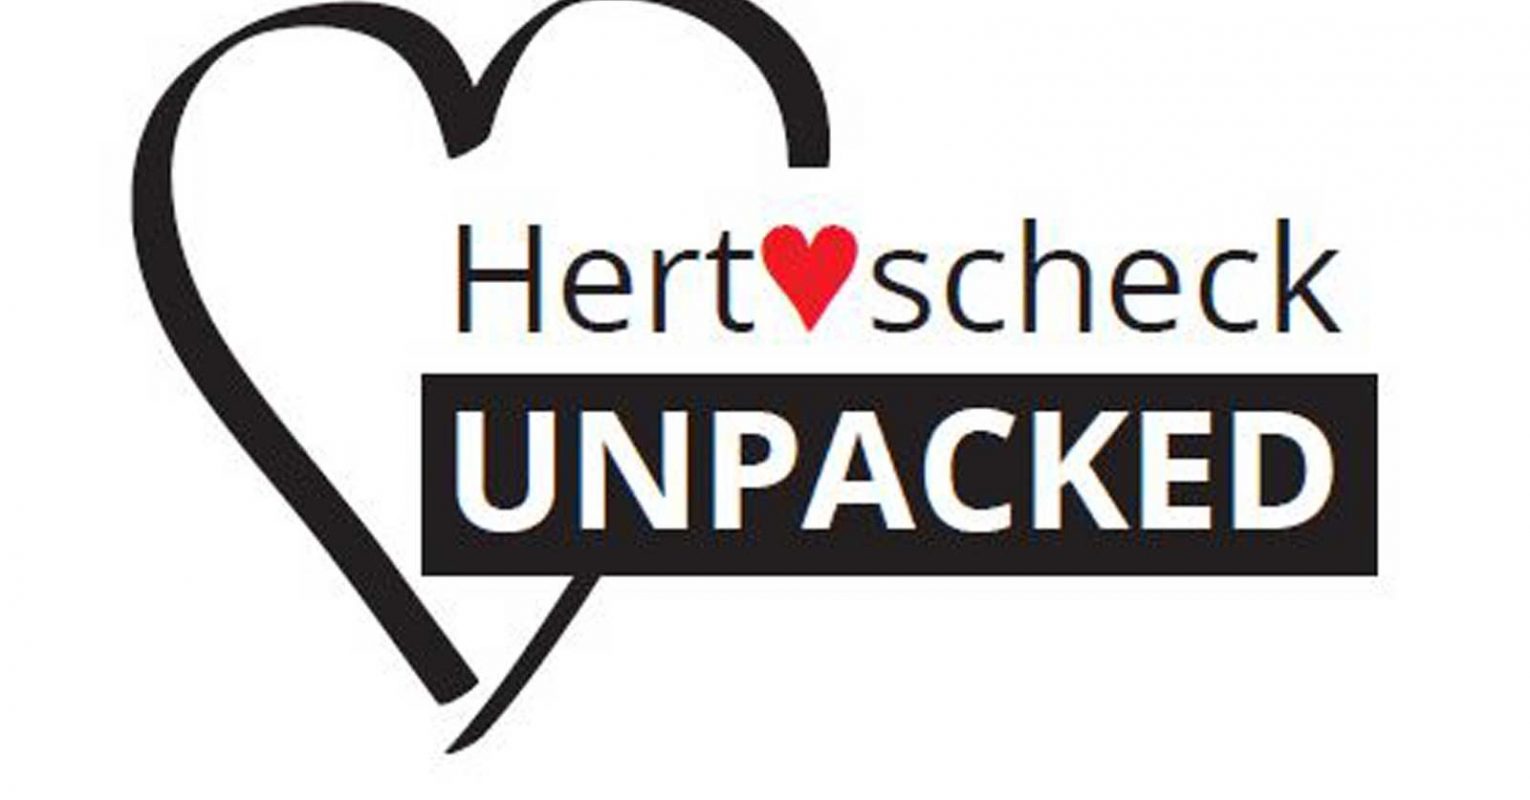 Hertscheck unpacked – Innovation unverpackt!